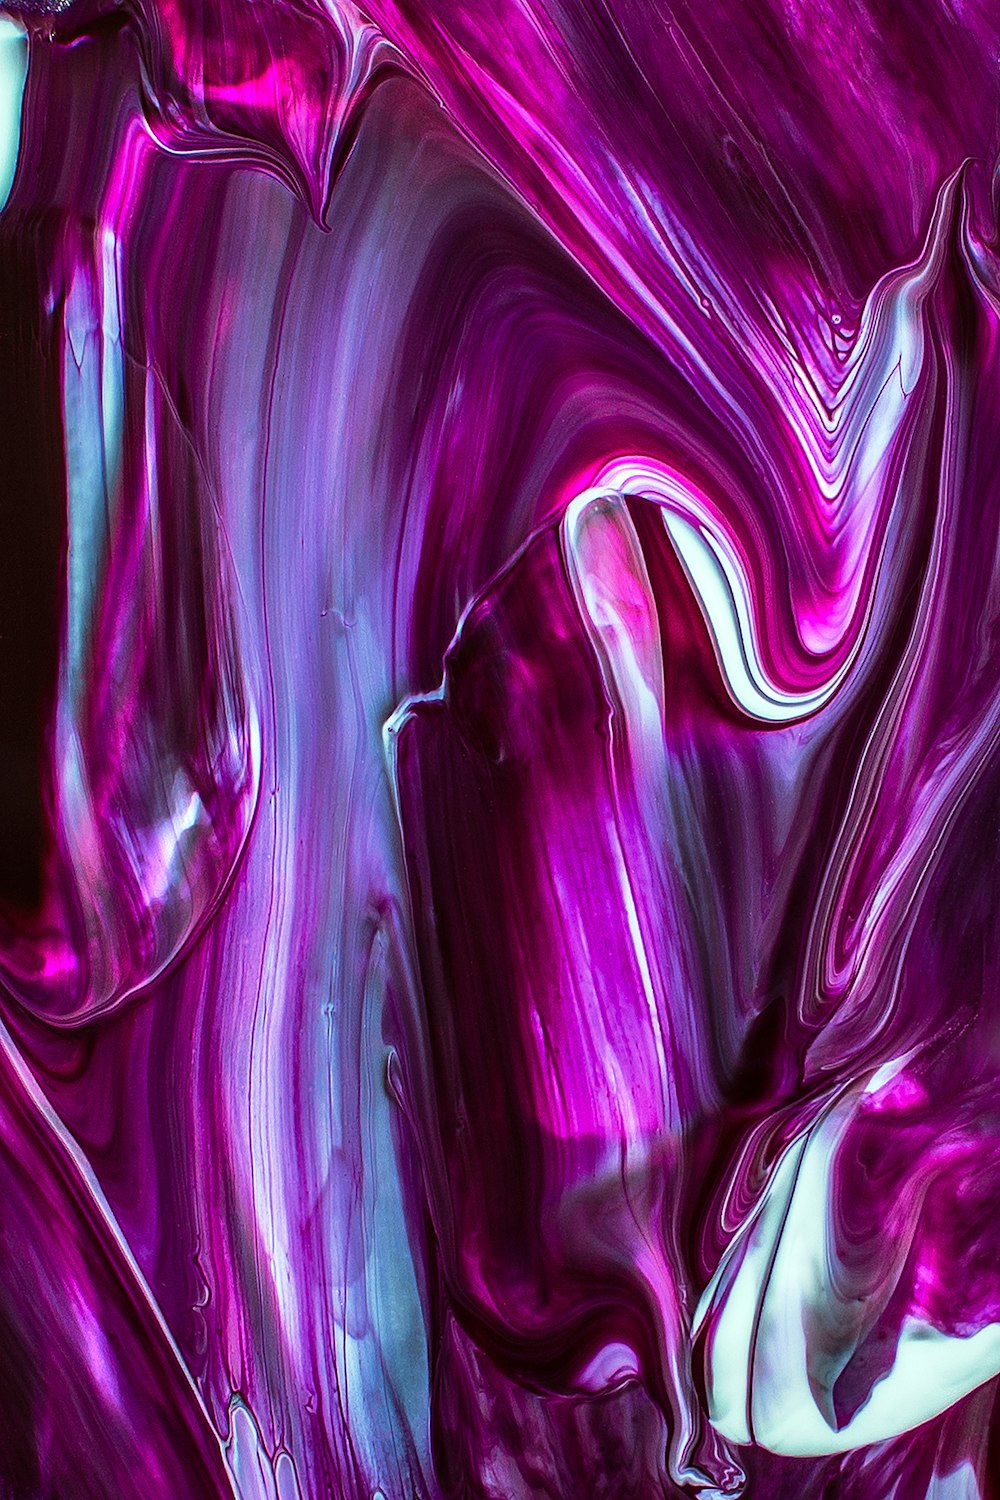 Purple Wallpapers: Free HD Download 500+ HQ | Unsplash